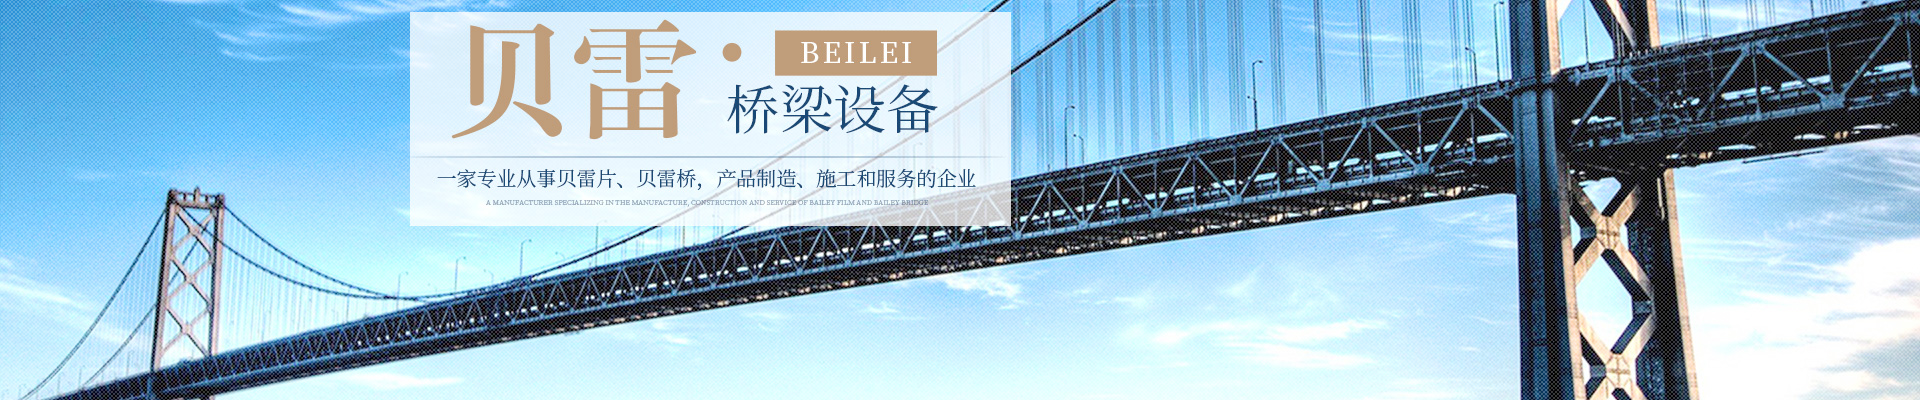 郴州貝雷科技鋼結構有限公司_郴州貝雷片|貝雷橋|鋼橋配件|貝雷銷生產